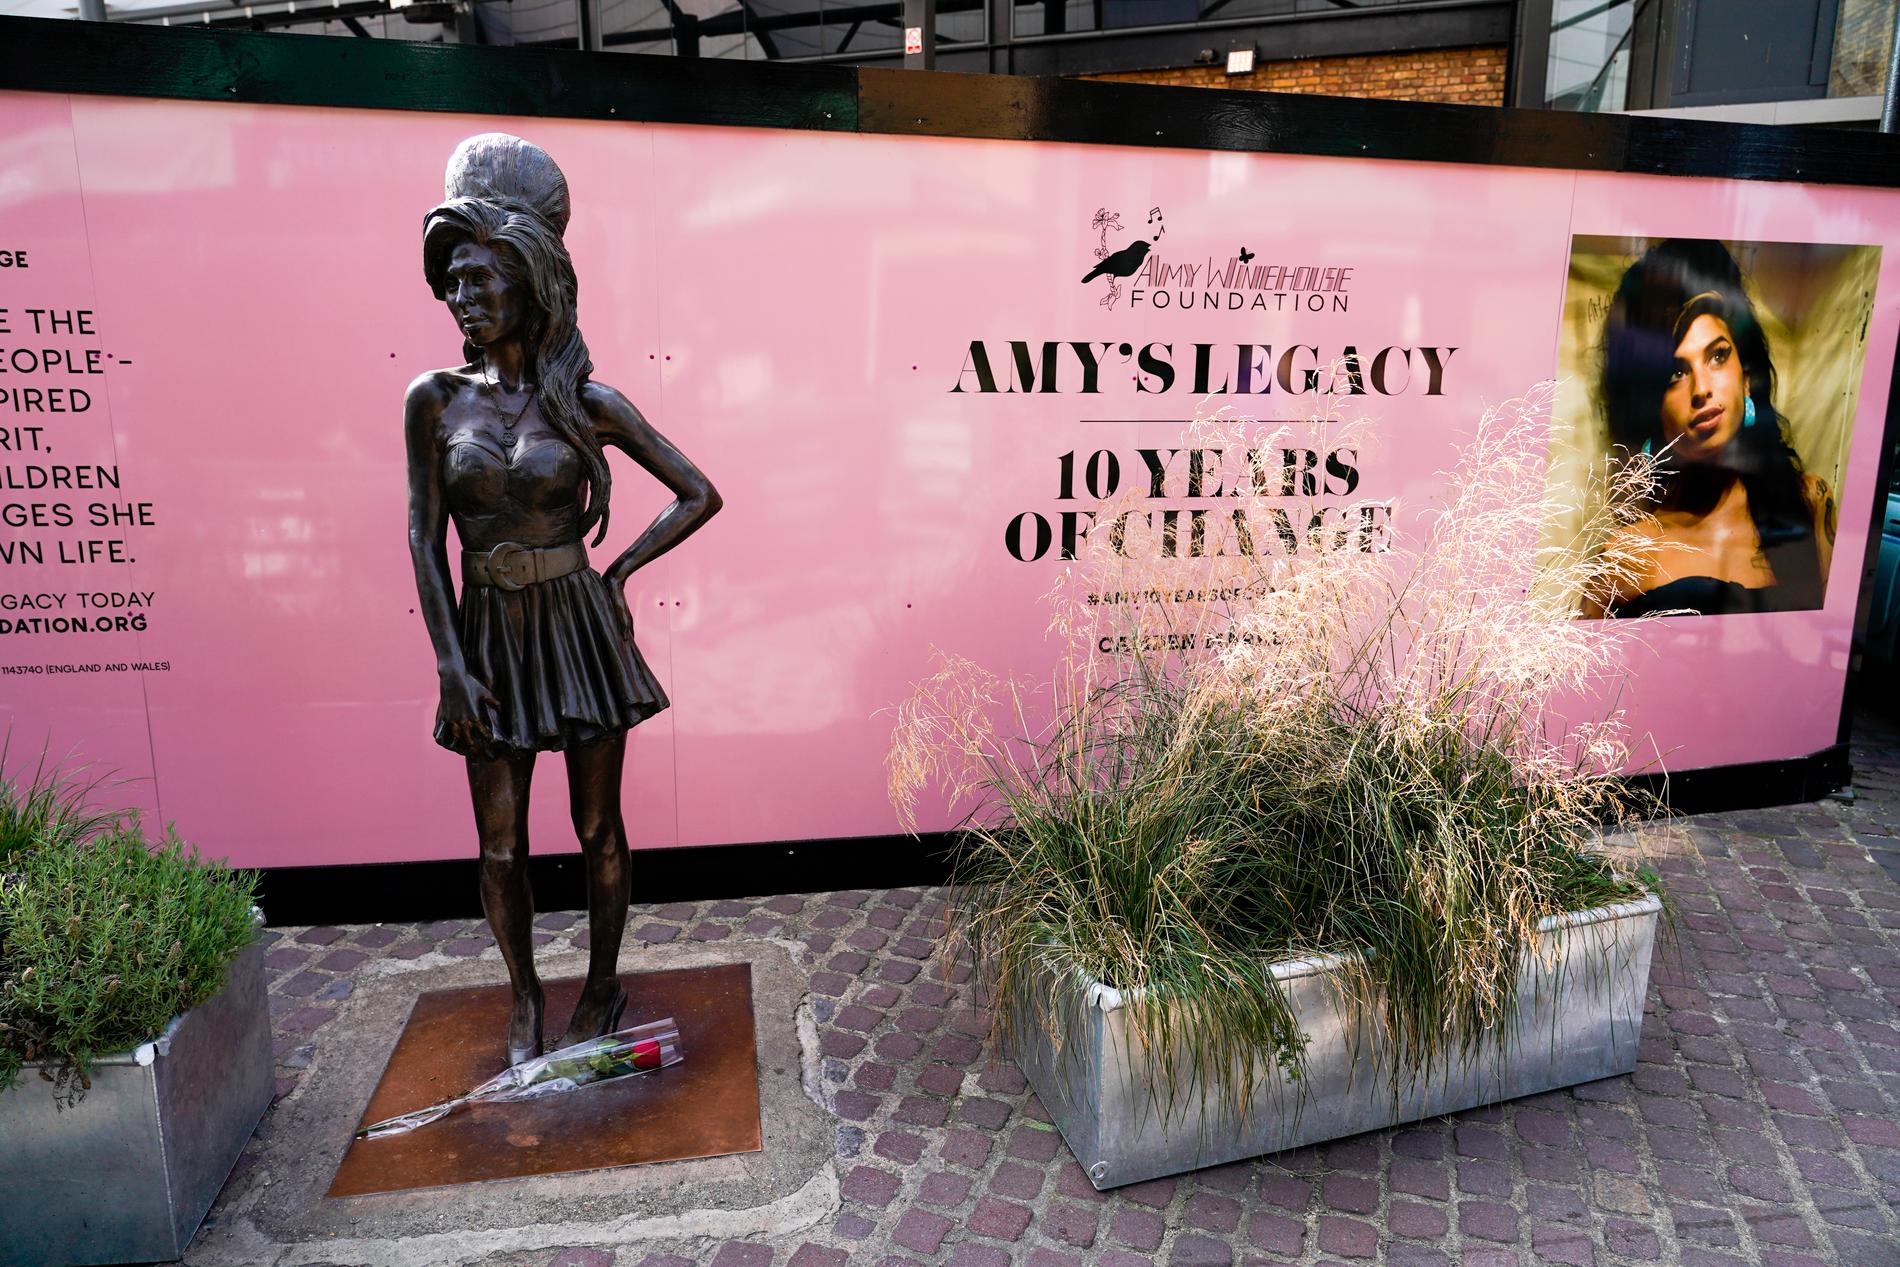 En ensam ros hyllade minnet av Amy Winehouse, tio år efter hennes död. Statyn av den brittiska sångerskan står vid ingången till Camden Market.